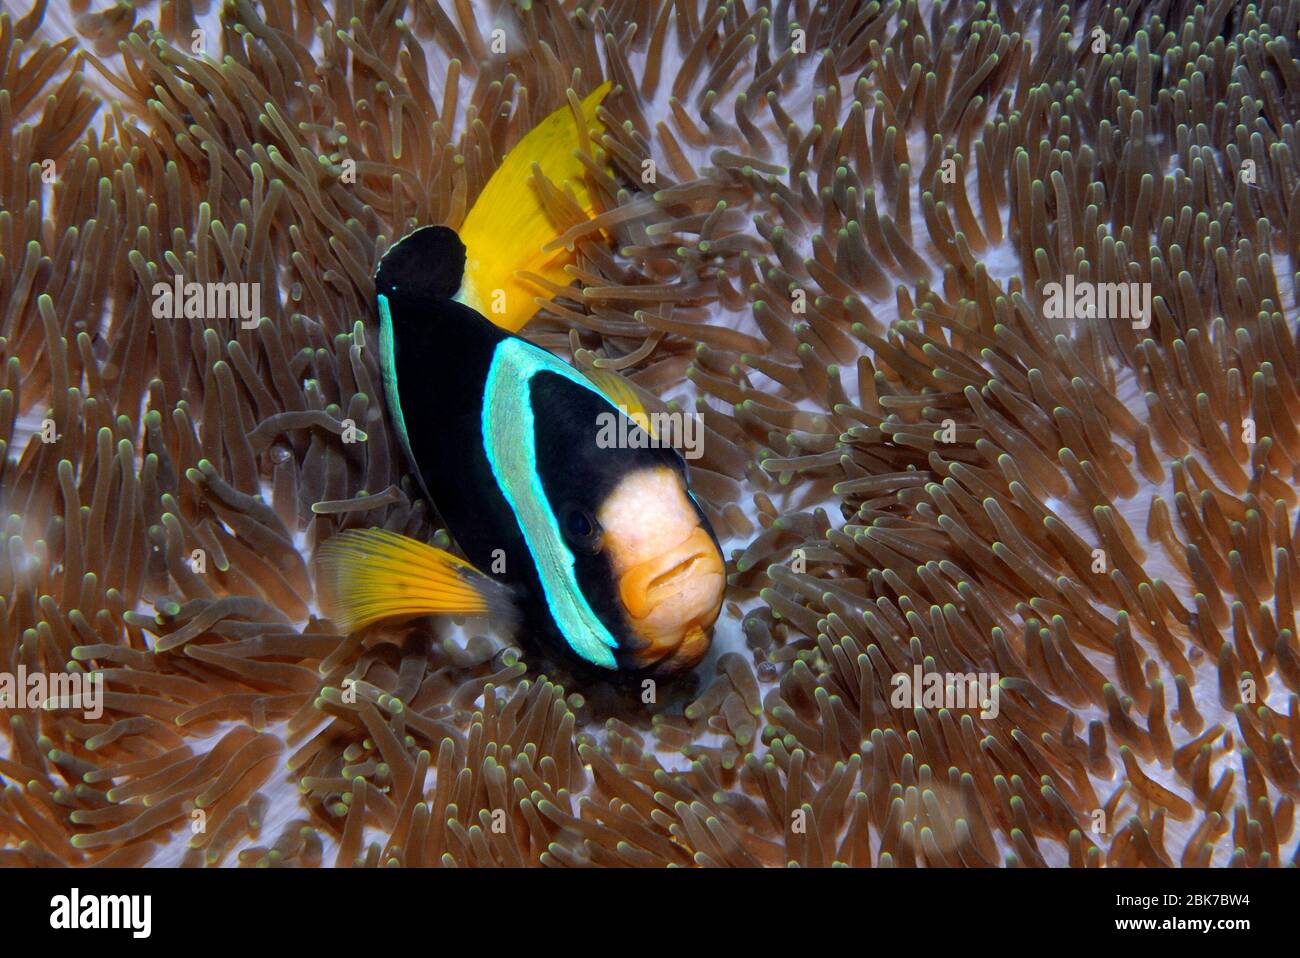 Clarks Anemonenfisch (Amphiprion clarki), Indischer Ozean Stock Photo